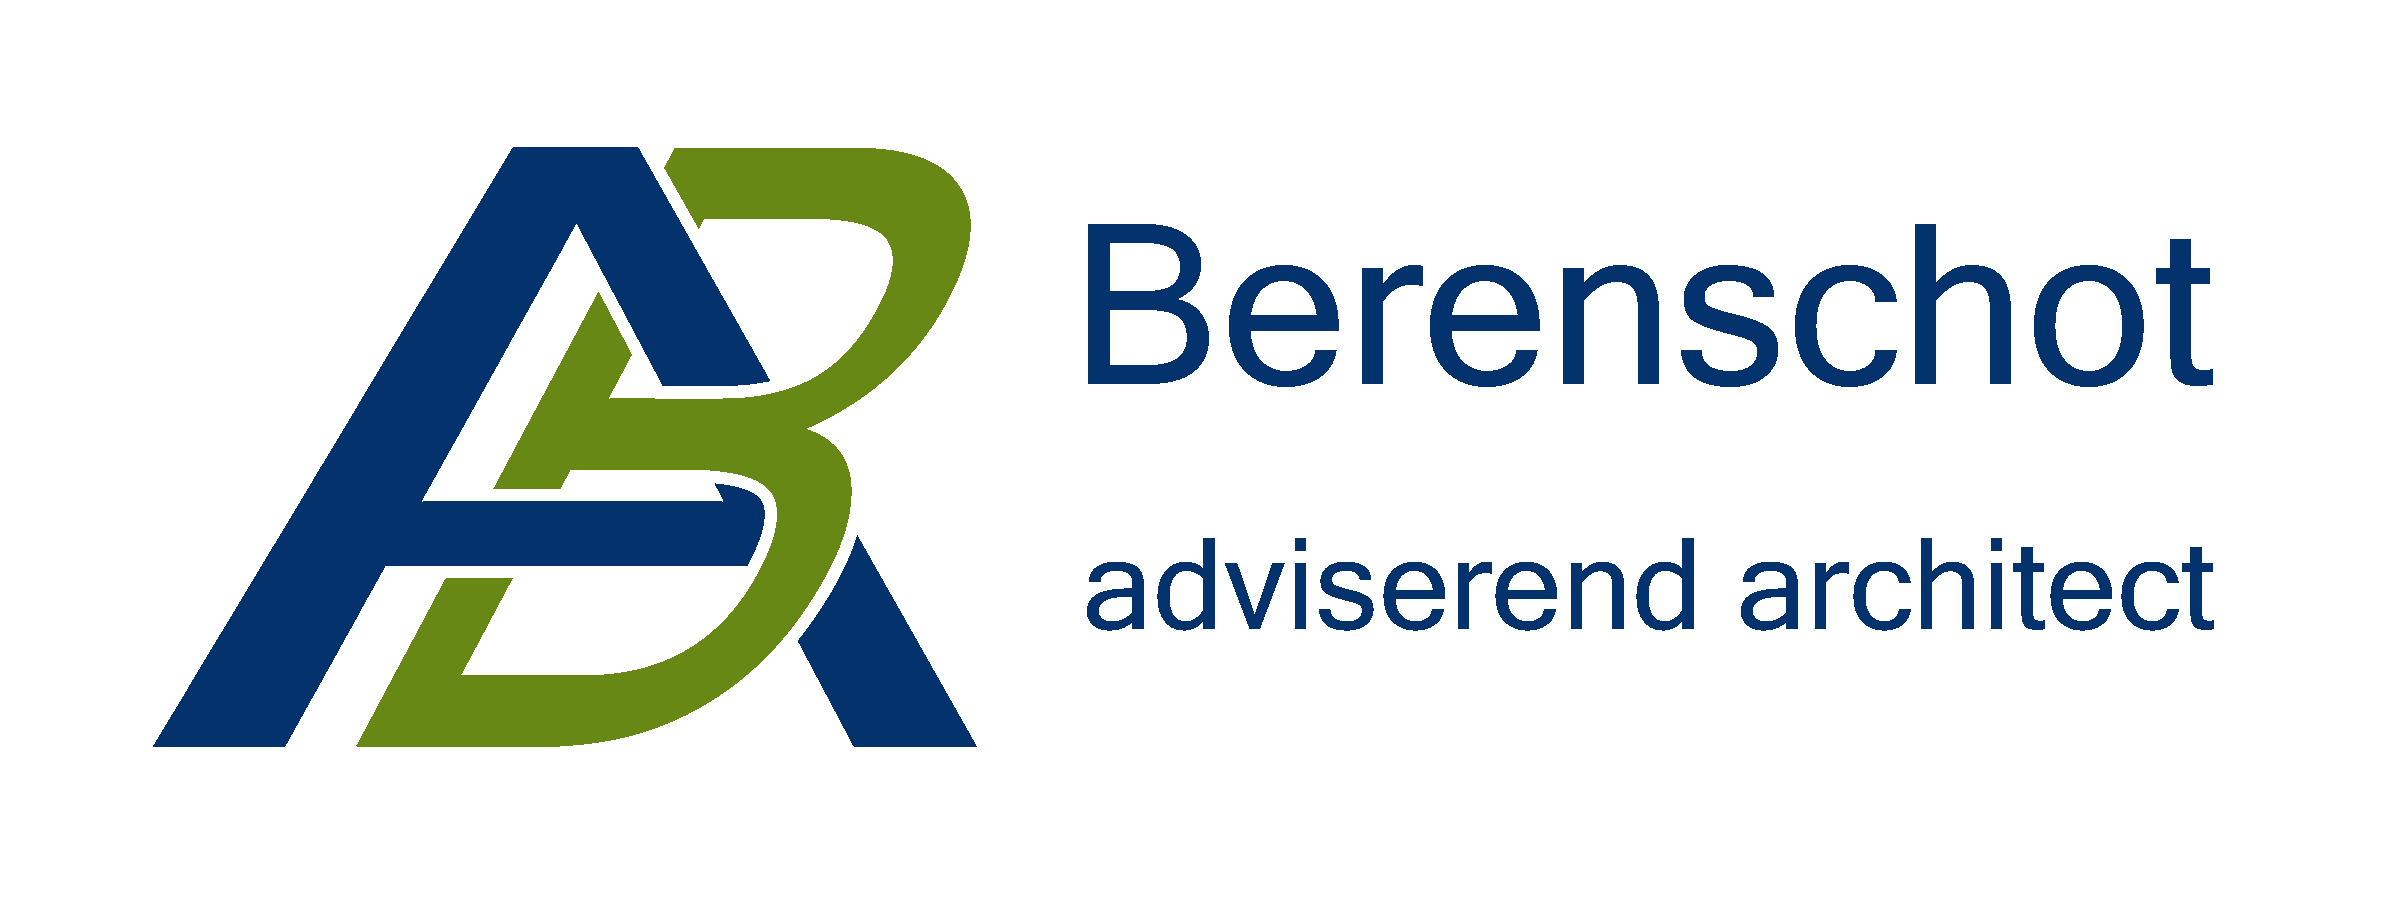 Berenschot Adviserend Architect